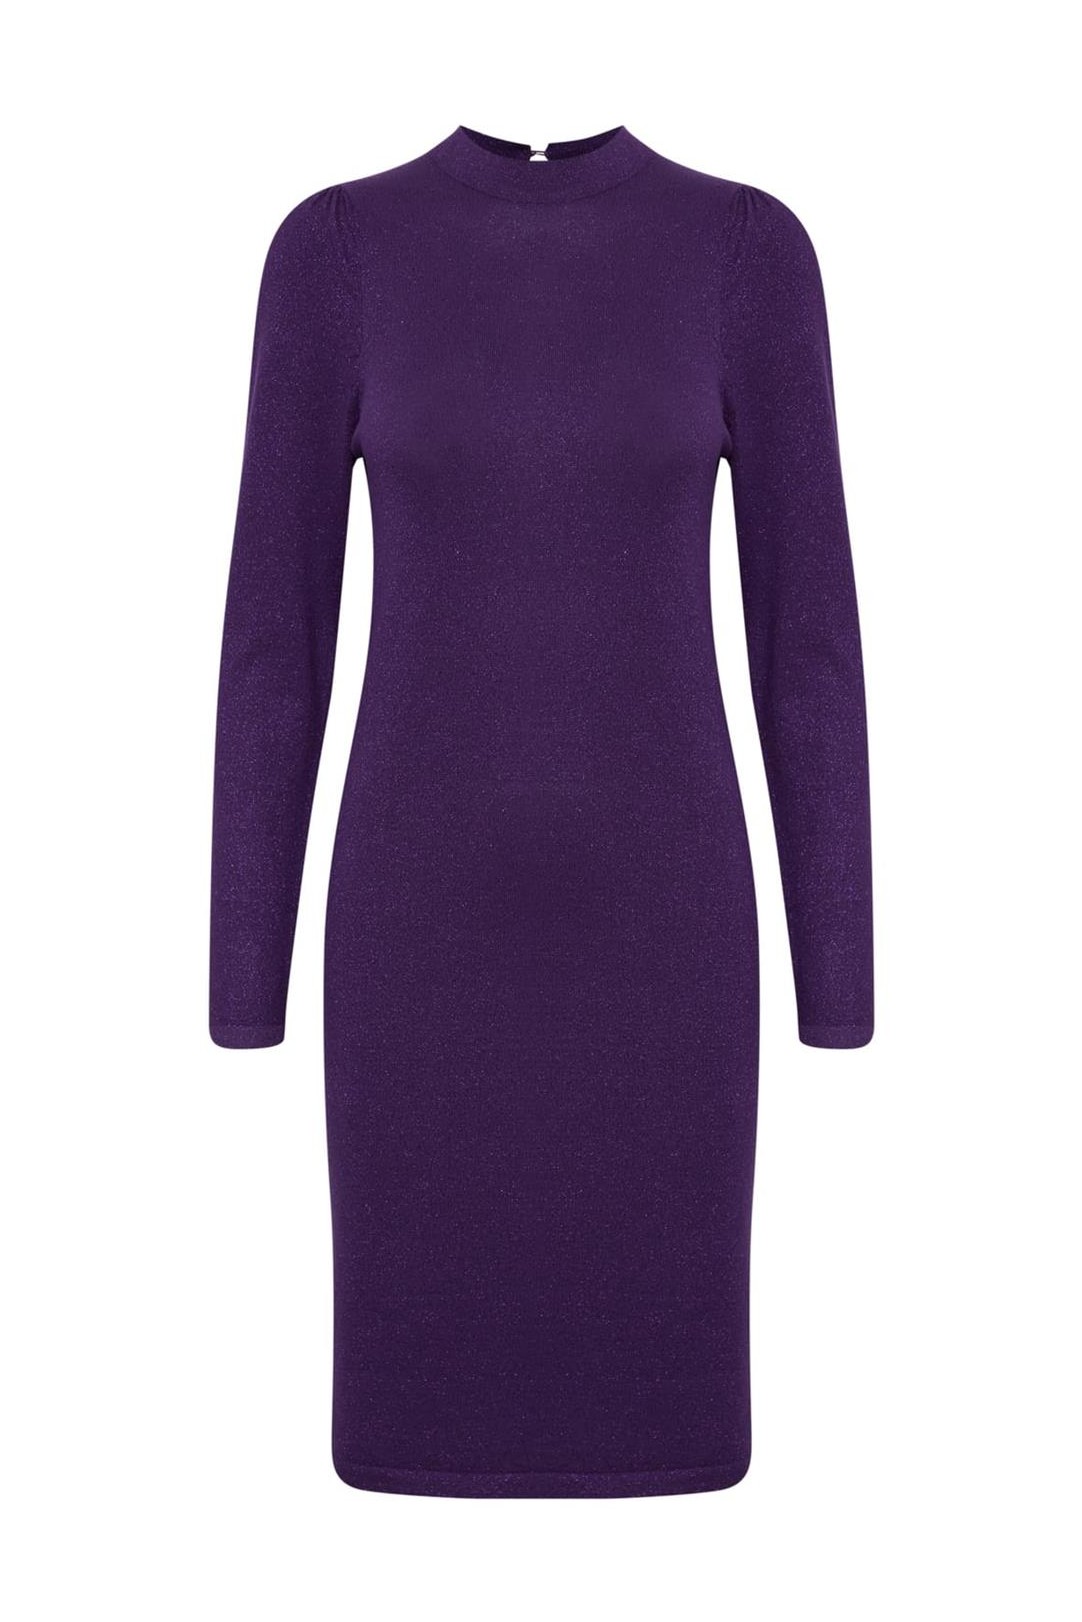 Vestido de mujer Ecada Jersey violeta talla 34/36 